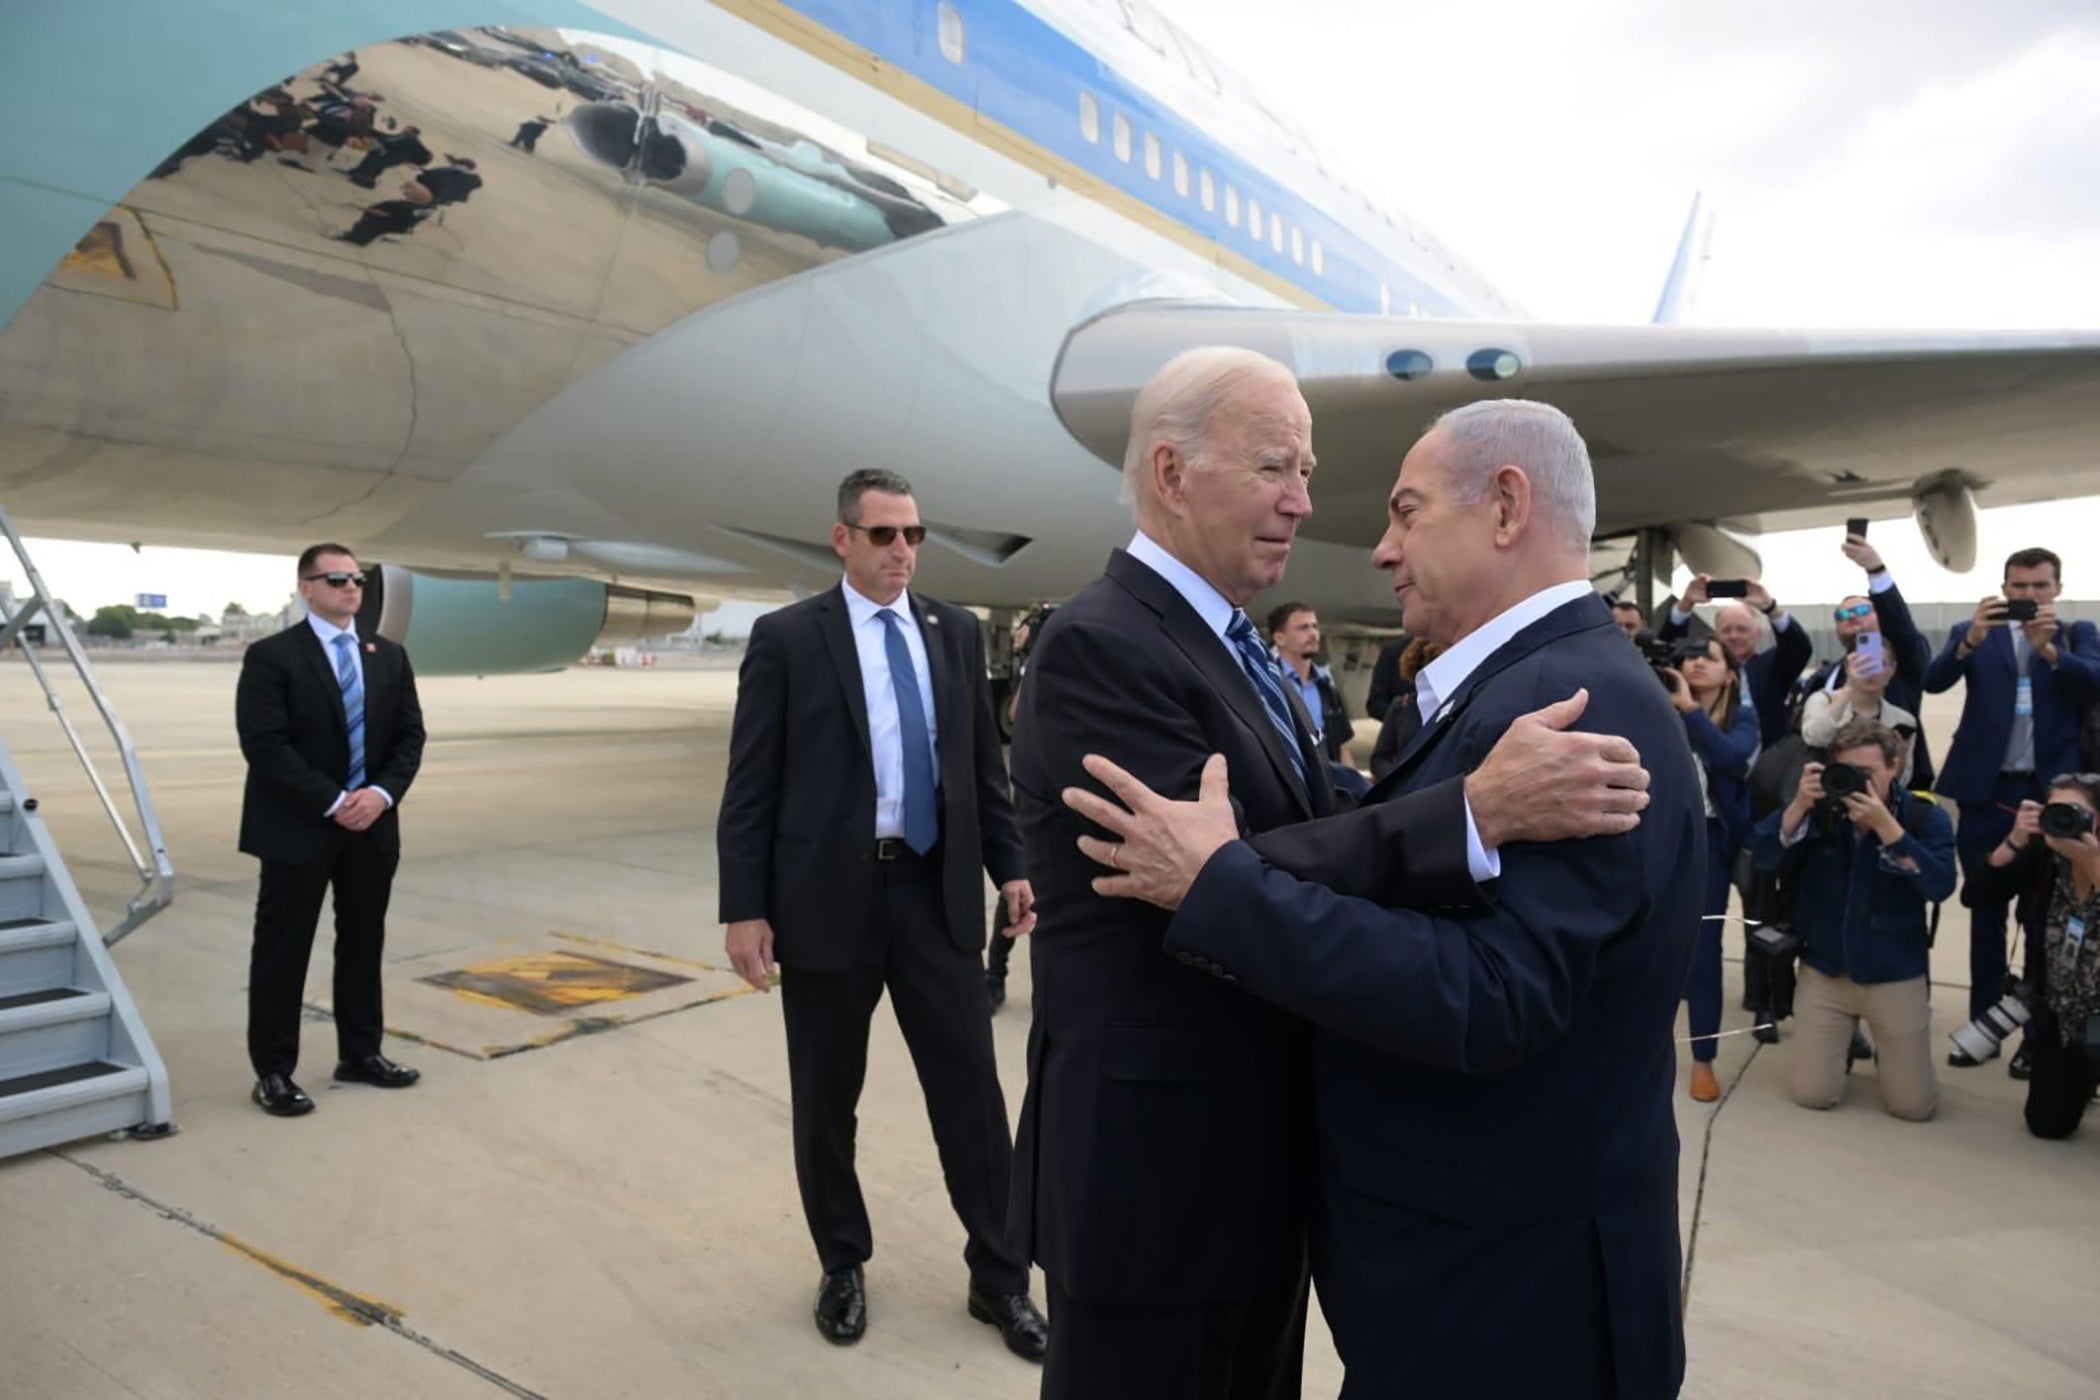 US president Joe Biden is greeted by Israeli prime minister Benjamin Netanyahu on arrival at Tel Aviv’s Ben-Gurion International Airport